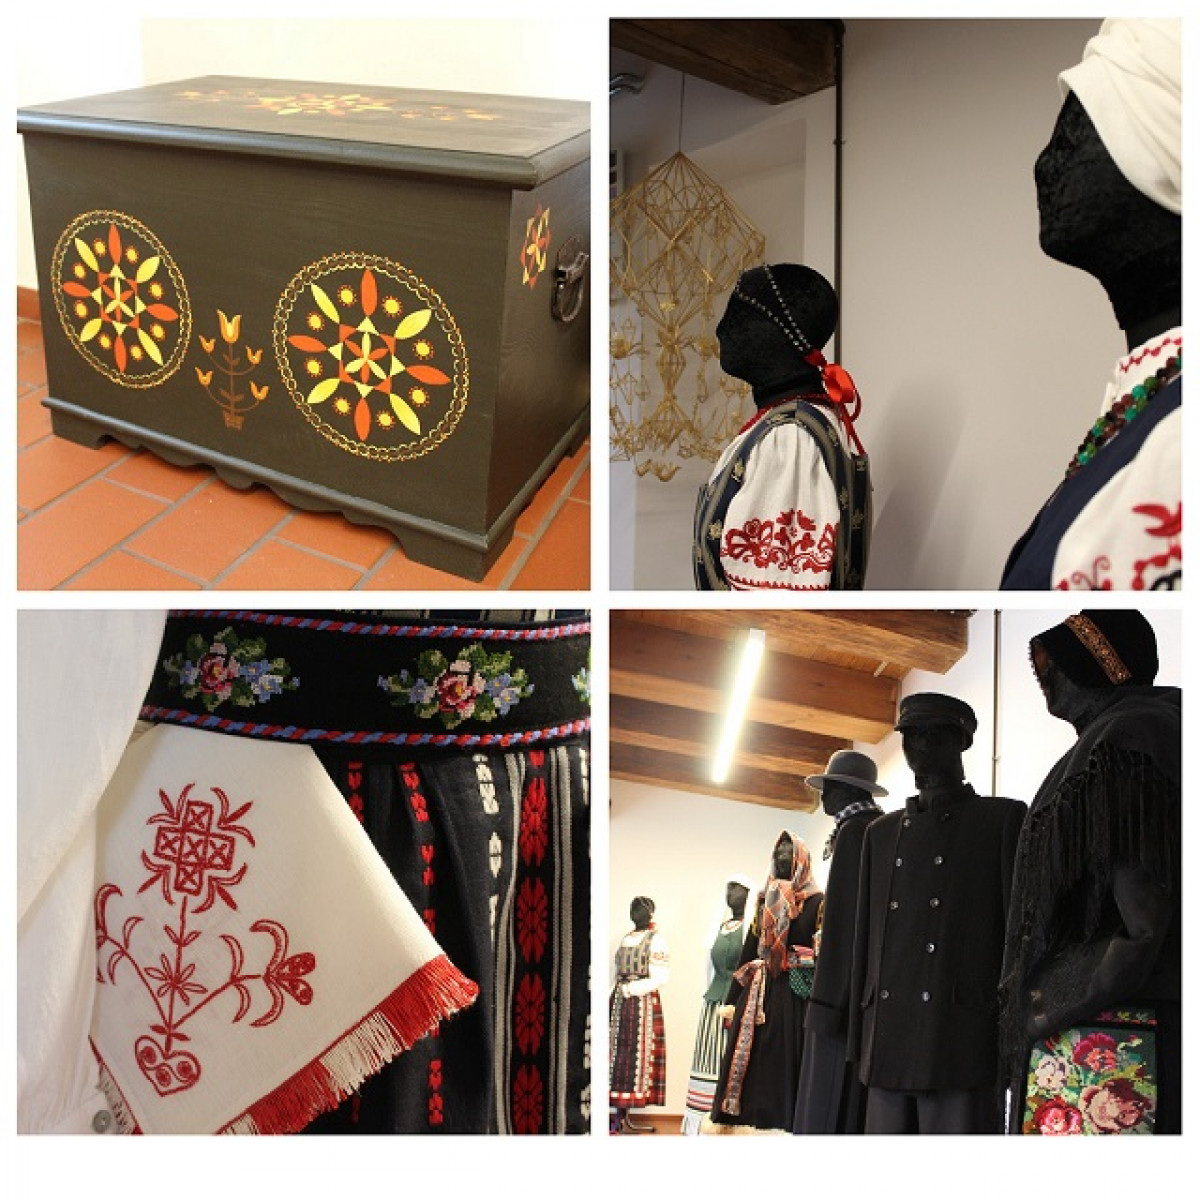 Etnokultūros centras kviečia miestiečius į tradicinės tekstilės galeriją